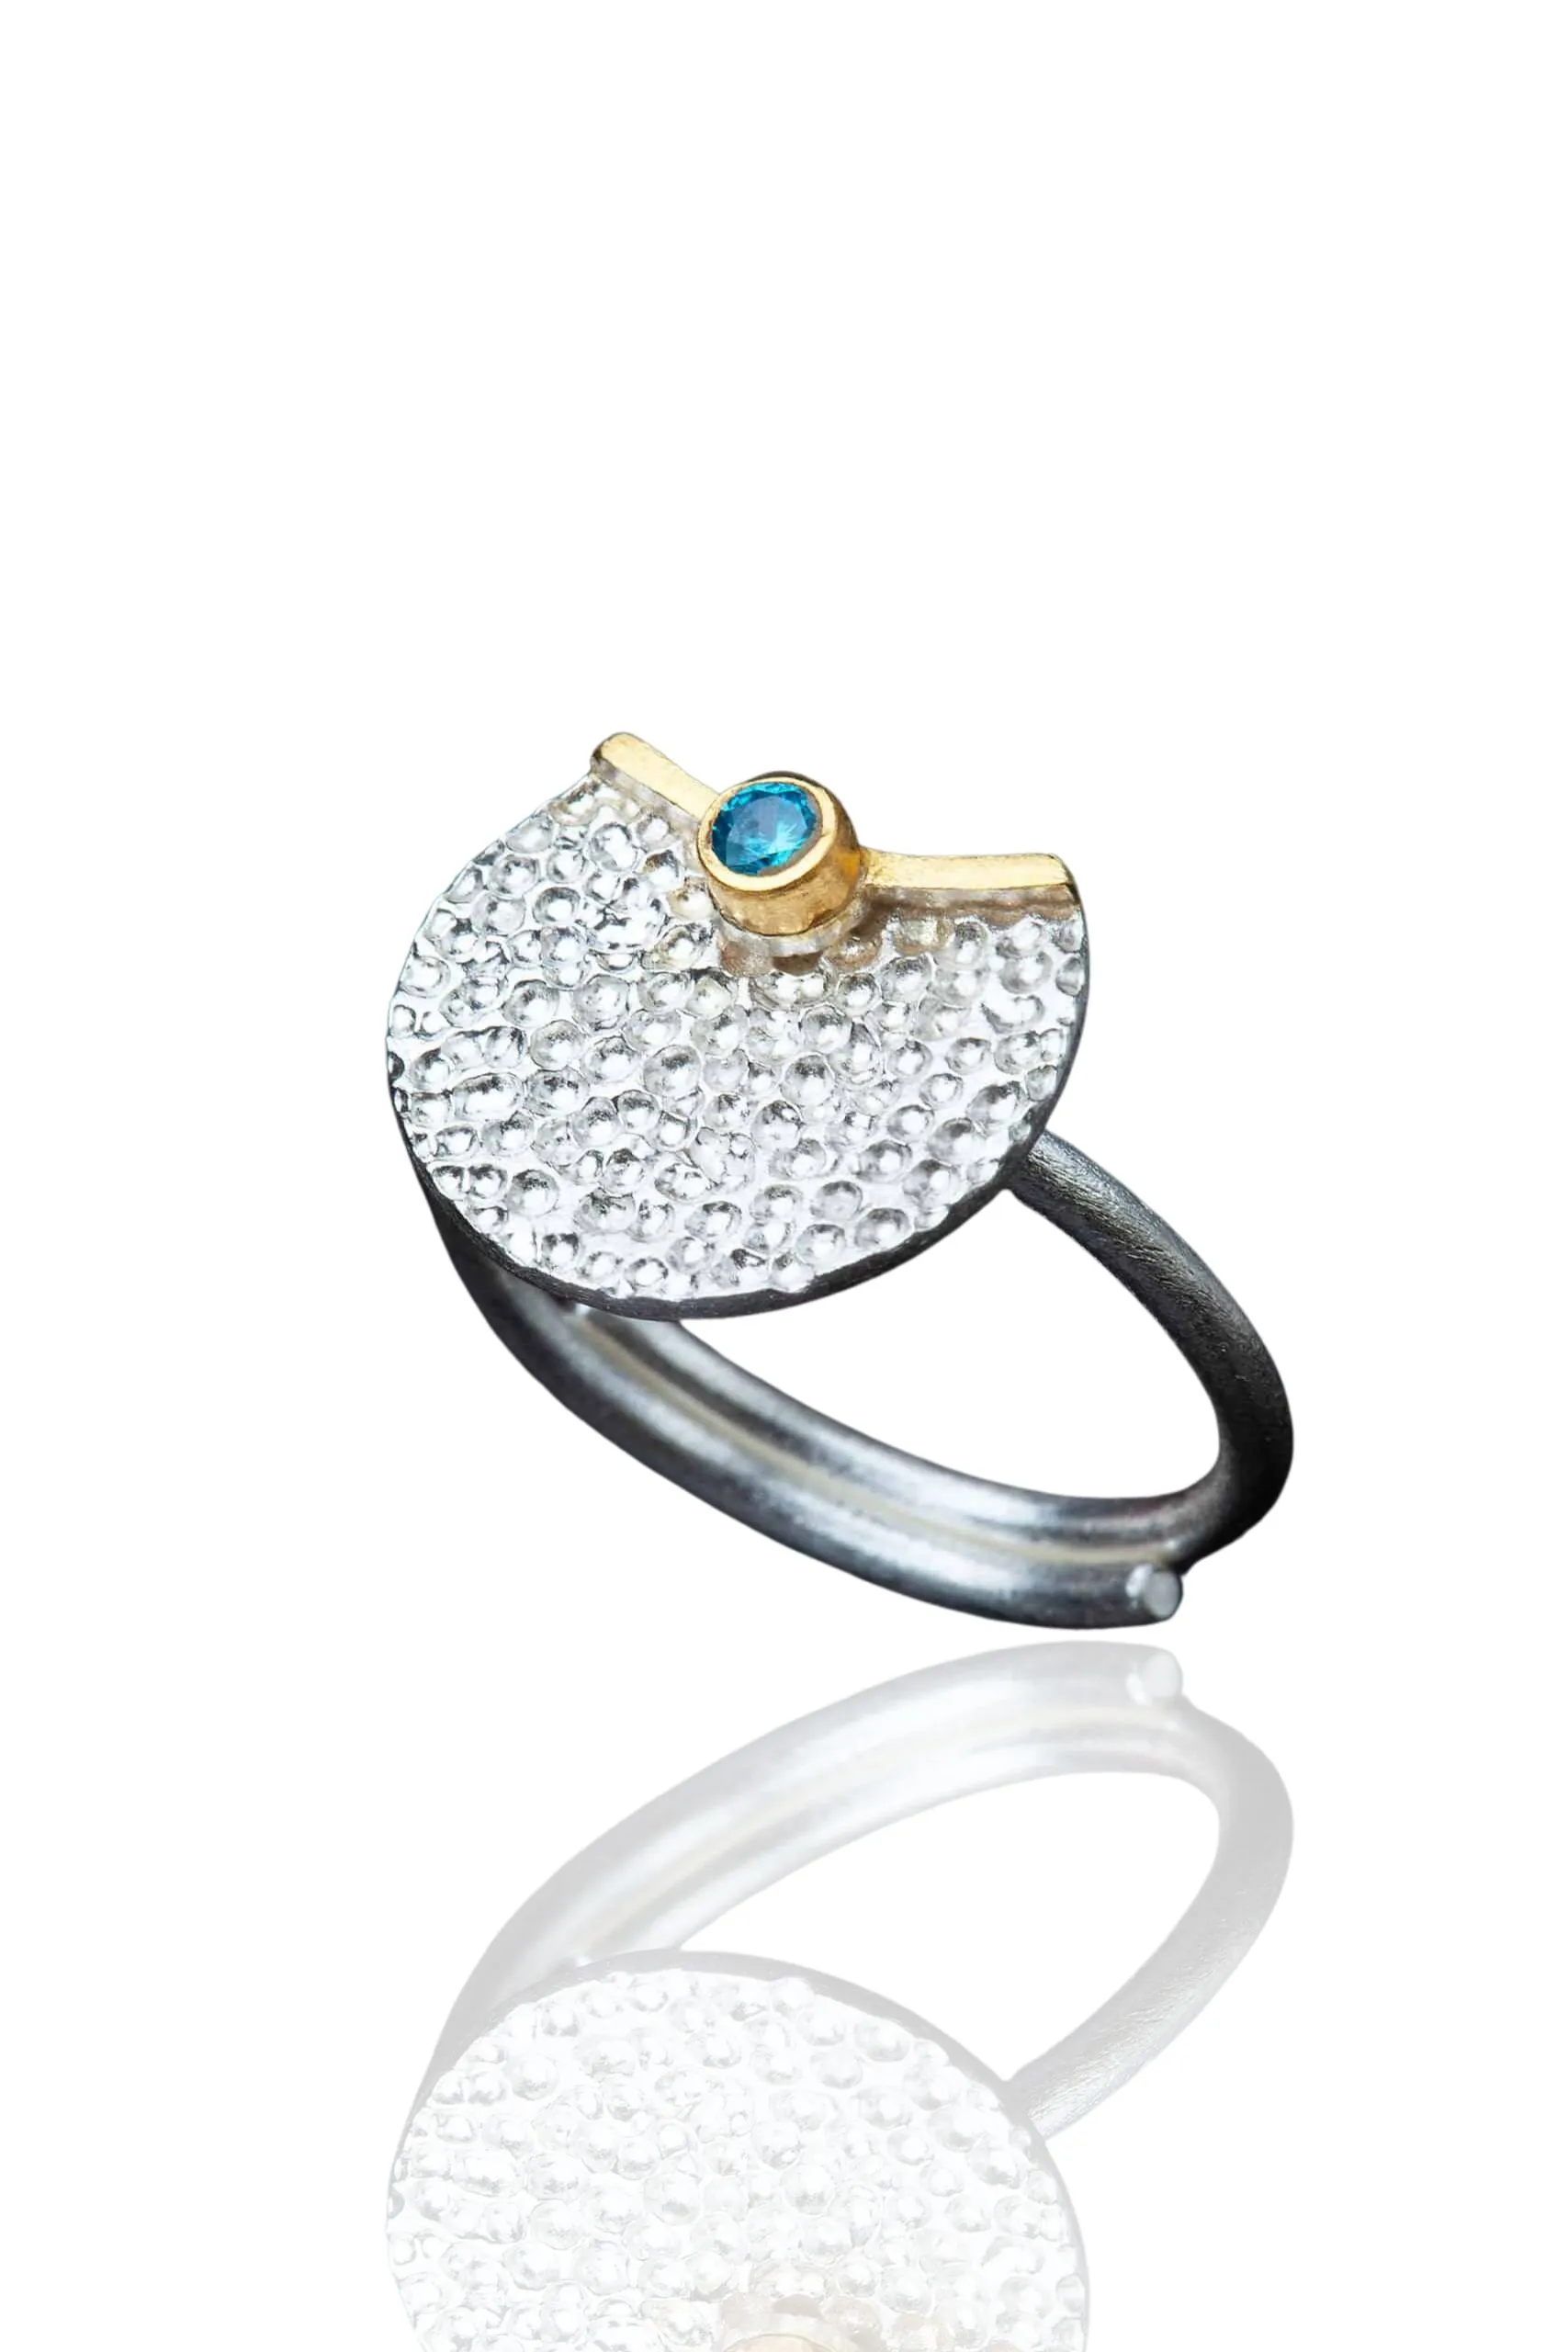 Χειροποίητα κοσμήματα | Κυκλικό ασημένιο δαχτυλίδι με επιπλατίνωση και επίχρυσες λεπτομέρειες, συδιασμένο με ζιργκόν main